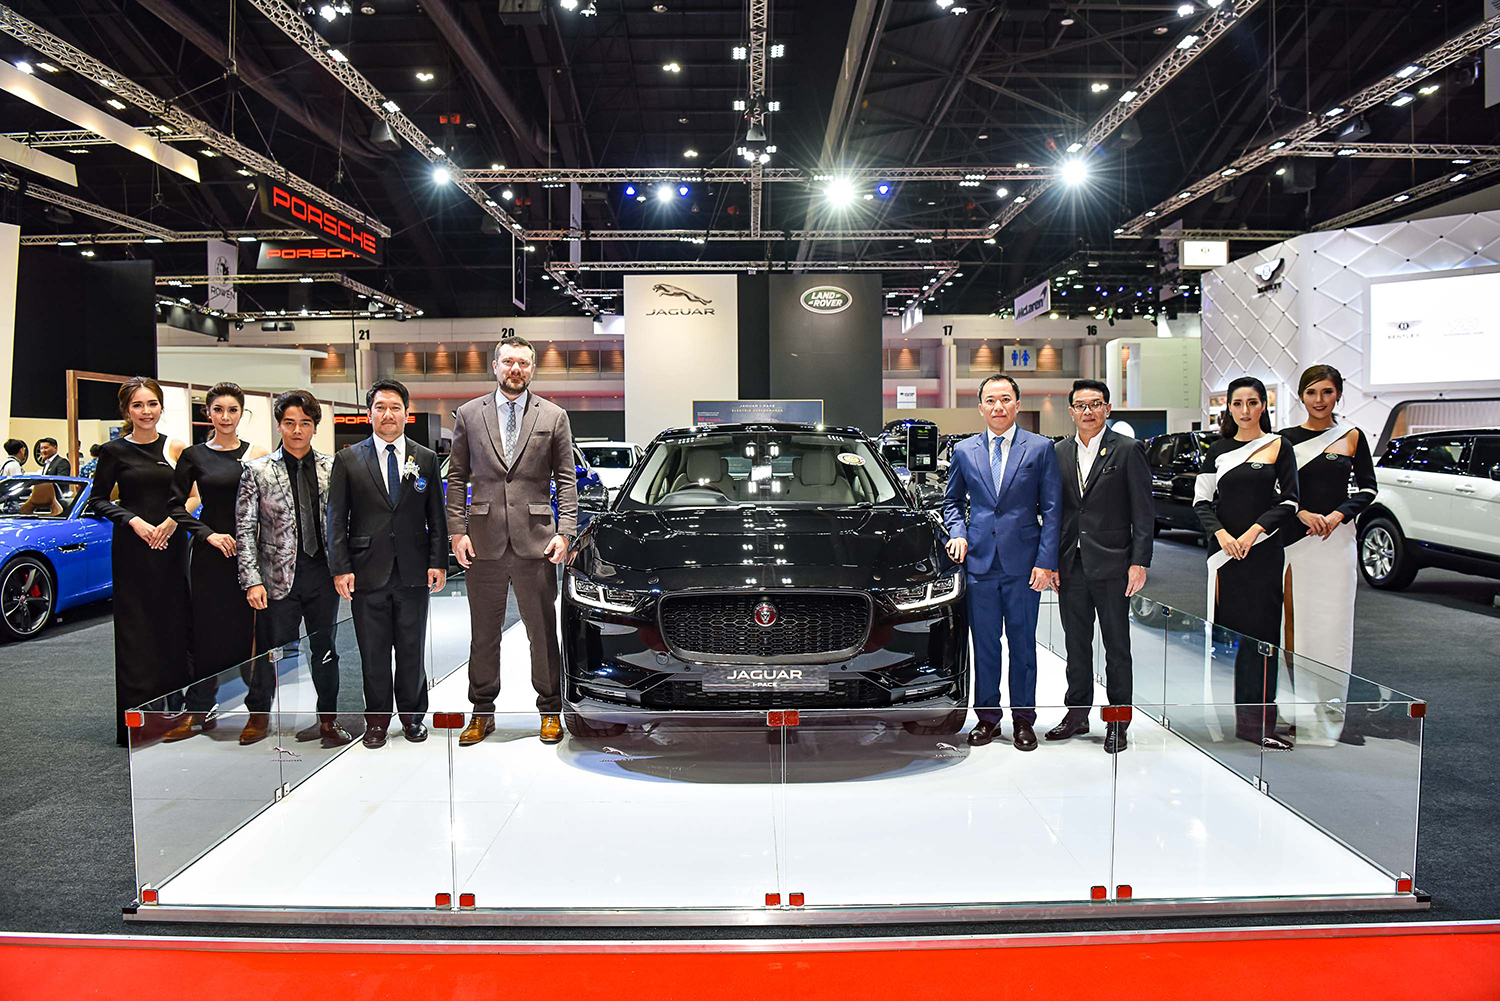 จากัวร์ เปิดตัวรถยนต์พลังงานไฟฟ้า I-PACE (ไอ-เพซ) ราคาเริ่มต้น 5.499 ล้าน 